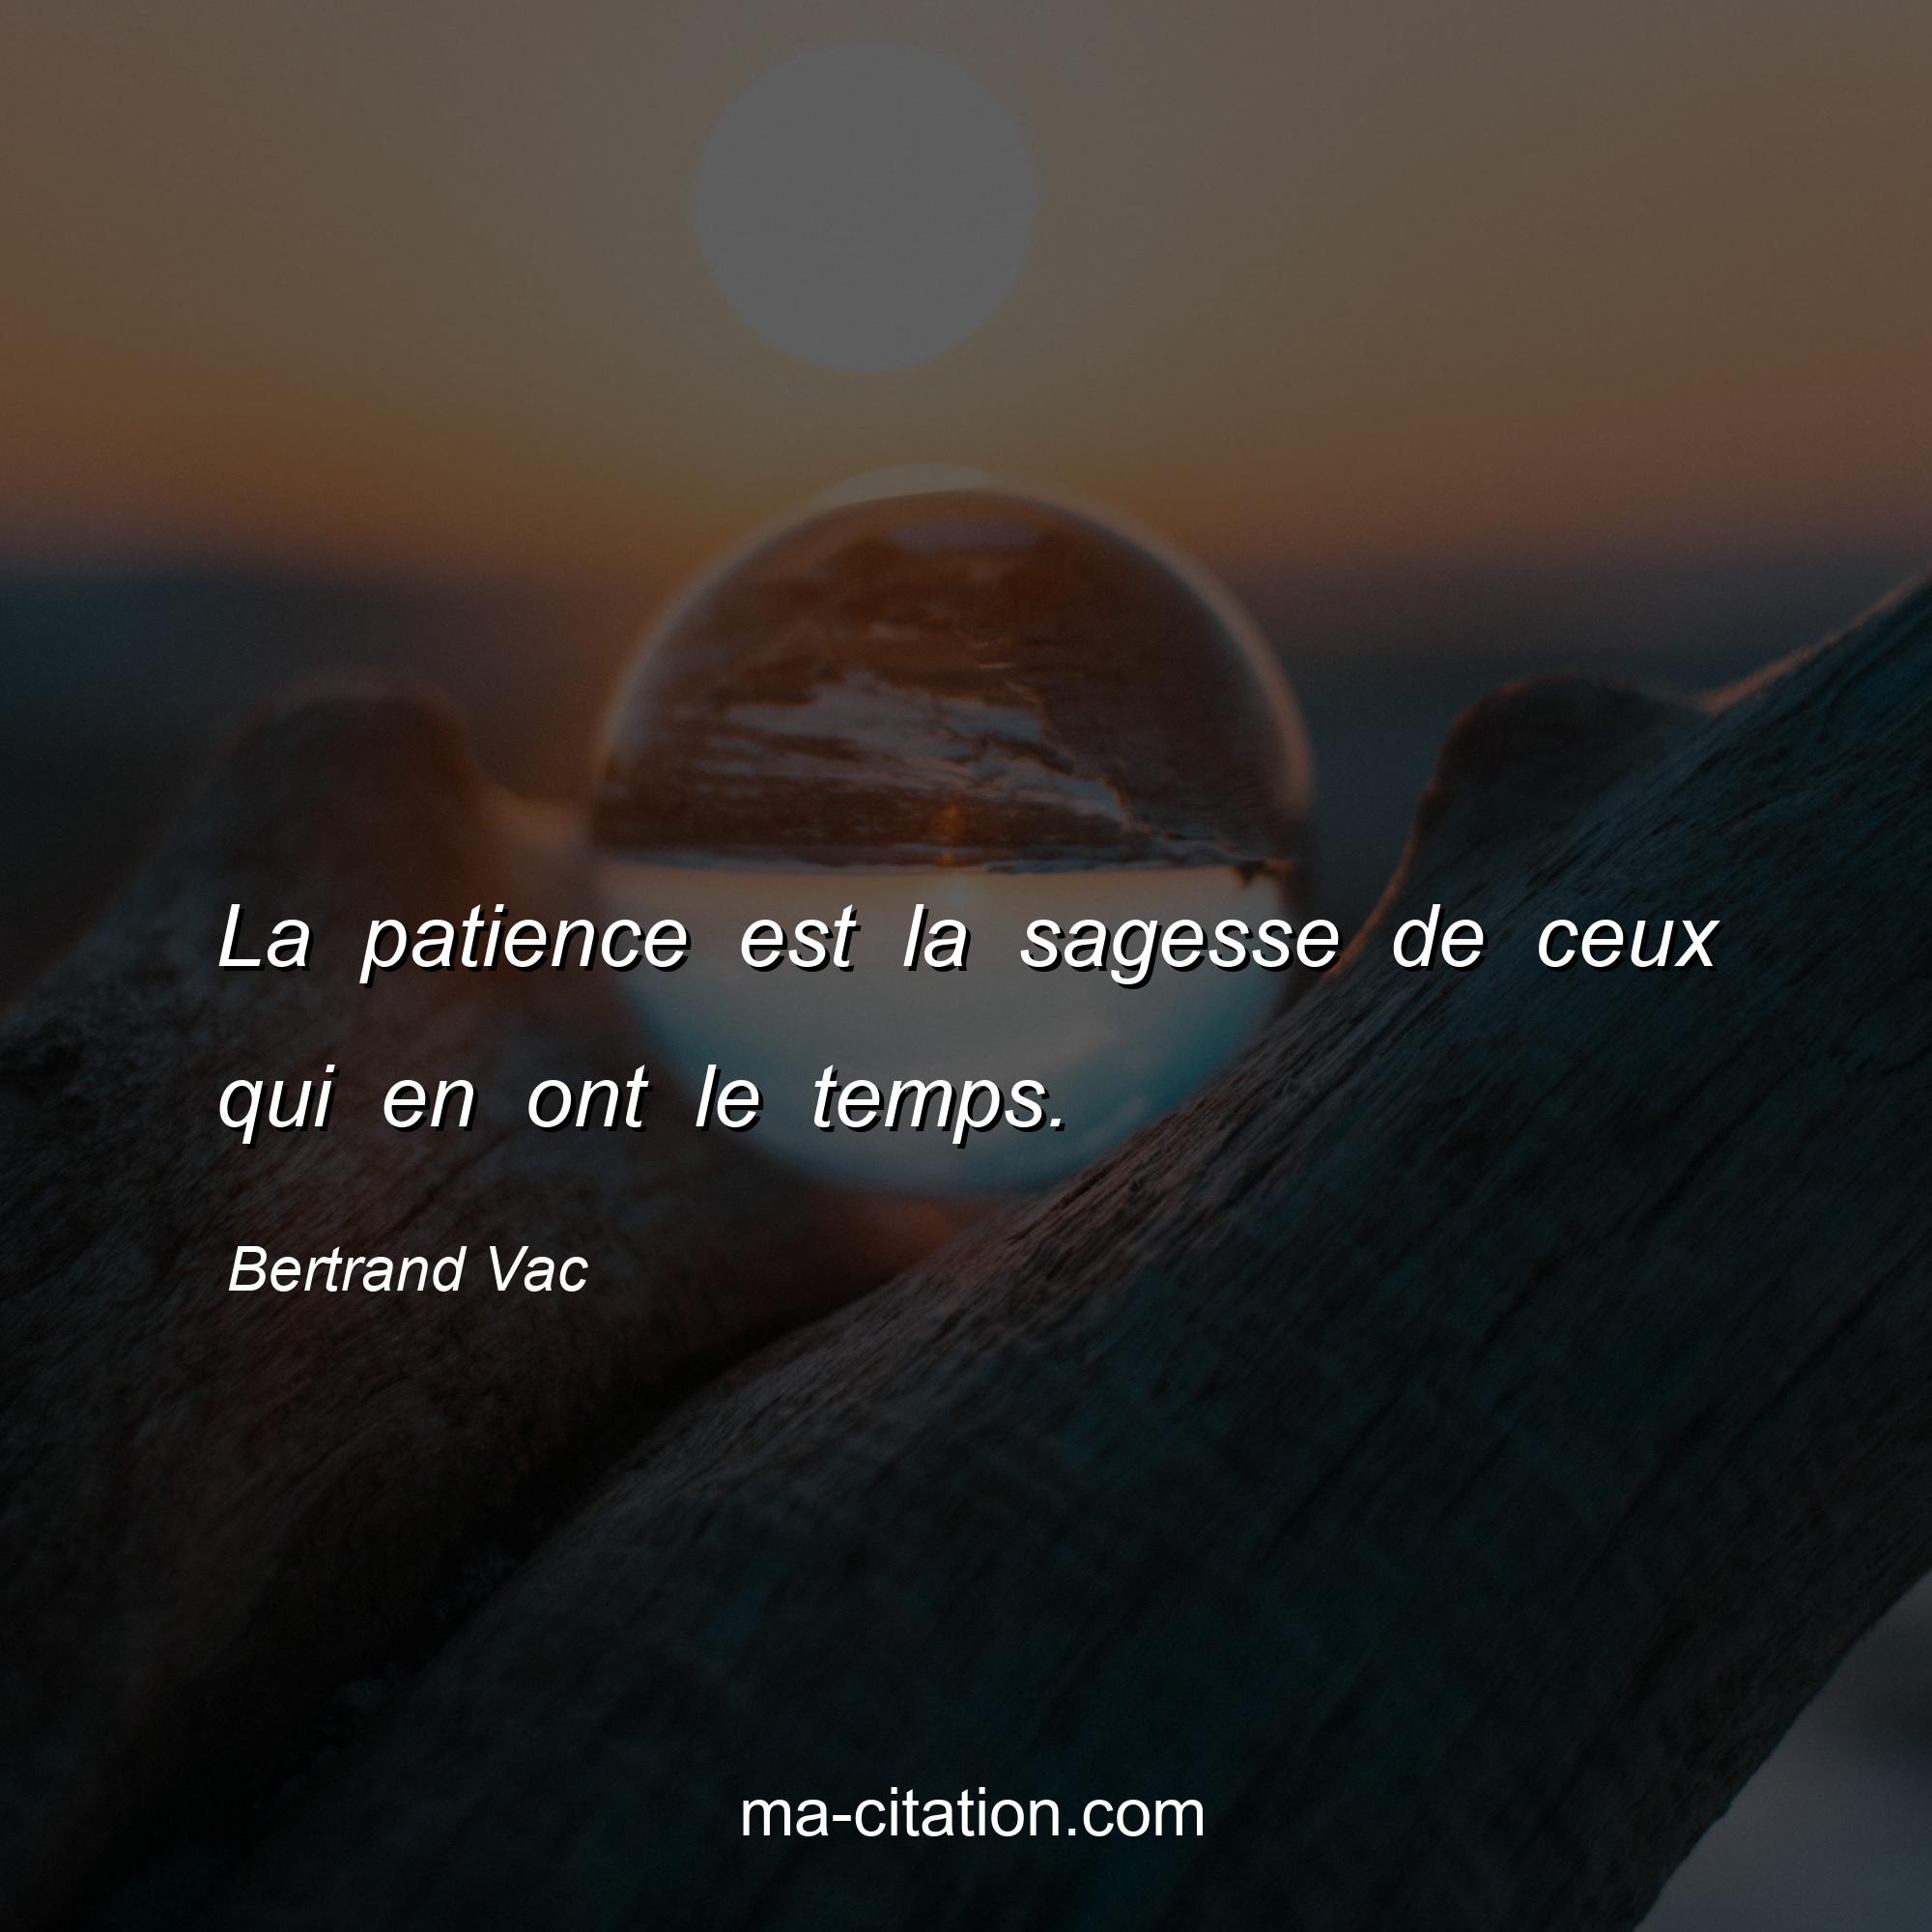 Bertrand Vac : La patience est la sagesse de ceux qui en ont le temps.